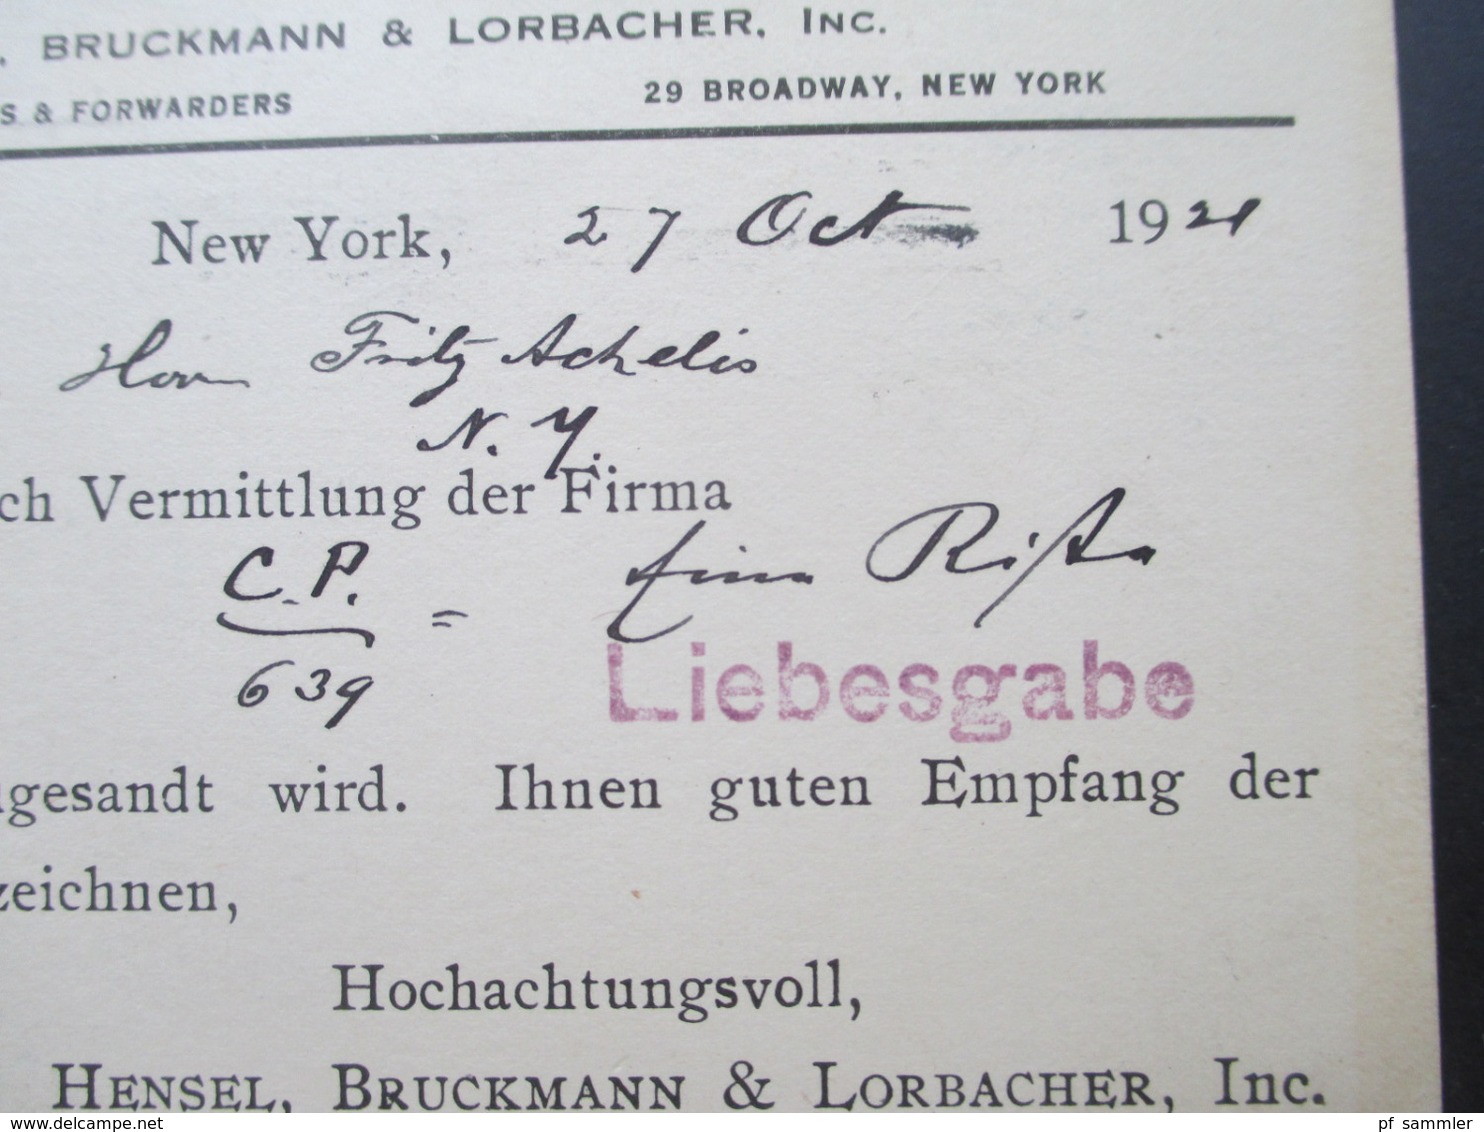 USA 1921 GA Liebesgaben Vermittelt Durch Carl Prior Hamburg Mit Der S.S. Mongolia Nach Göttingen. Schiffspost - Cartas & Documentos